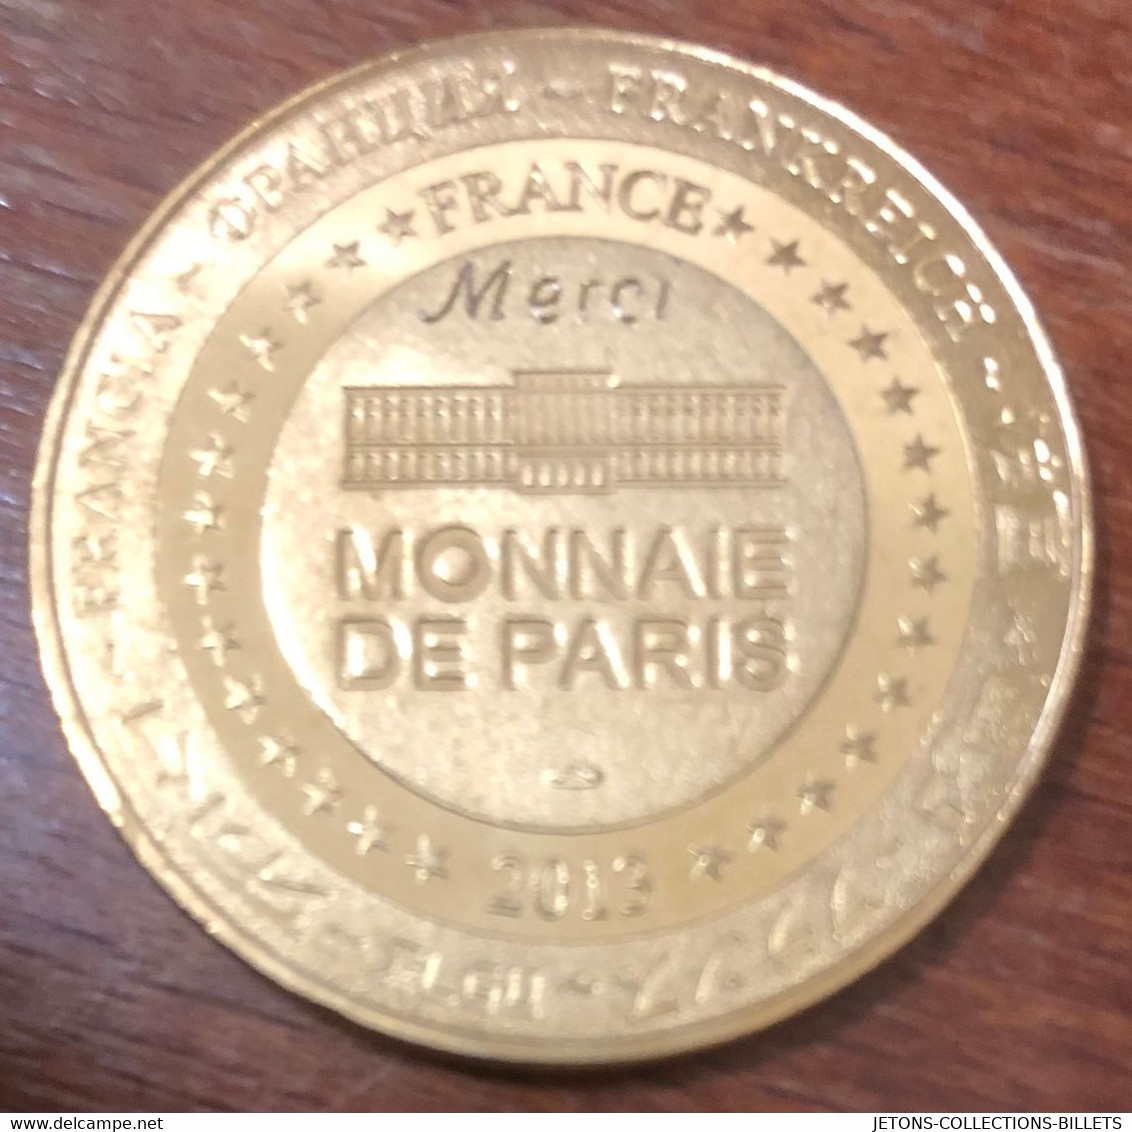 13 MARSEILLE LE PHARO GRAVÉE "MERCI" MDP 2013 MÉDAILLE SOUVENIR MONNAIE DE PARIS JETON TOURISTIQUE MEDALS COINS TOKENS - 2013